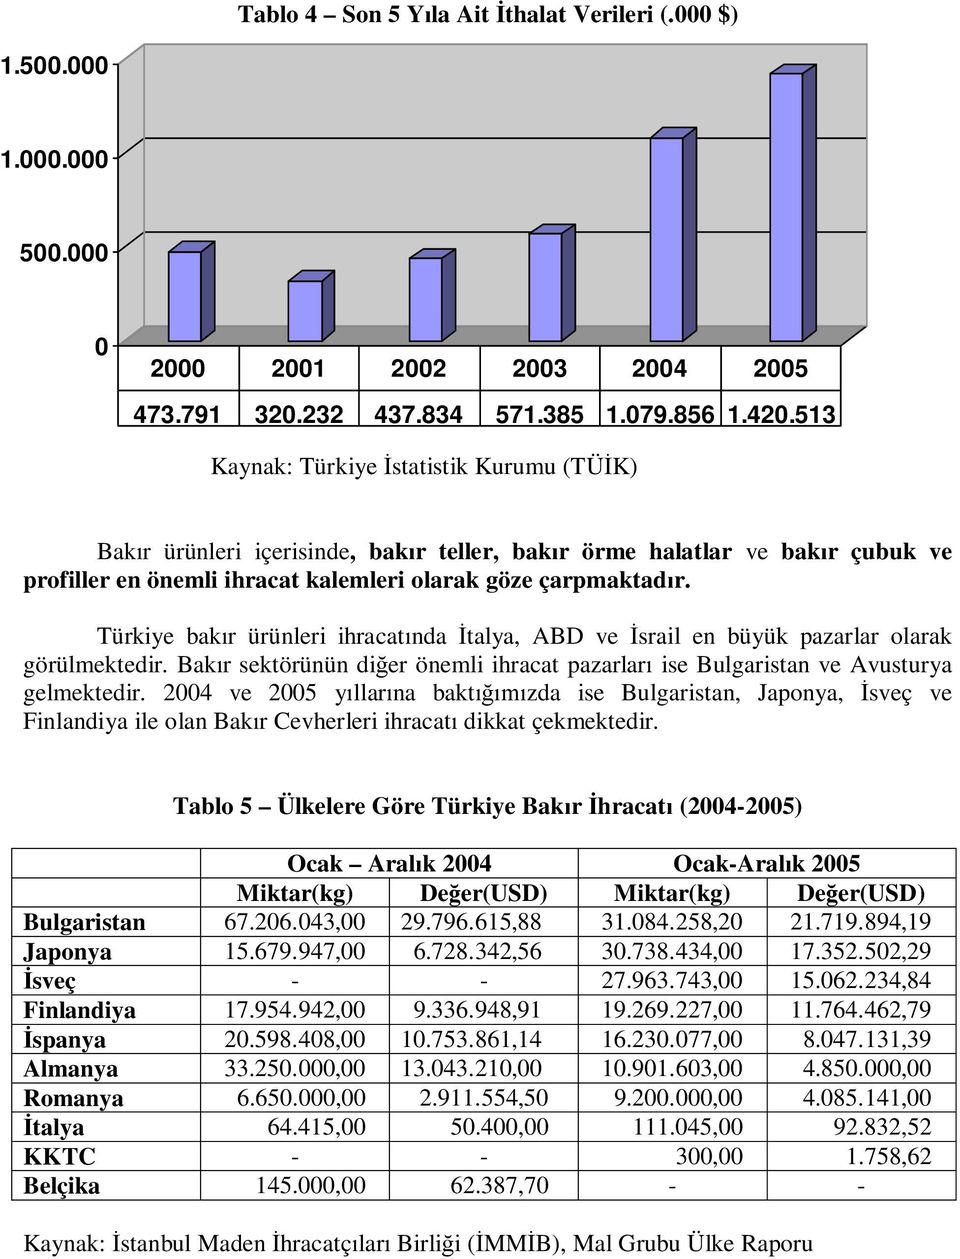 Türkiye bak r ürünleri ihracat nda talya, ABD ve srail en büyük pazarlar olarak görülmektedir. Bak r sektörünün di er önemli ihracat pazarlar ise Bulgaristan ve Avusturya gelmektedir.